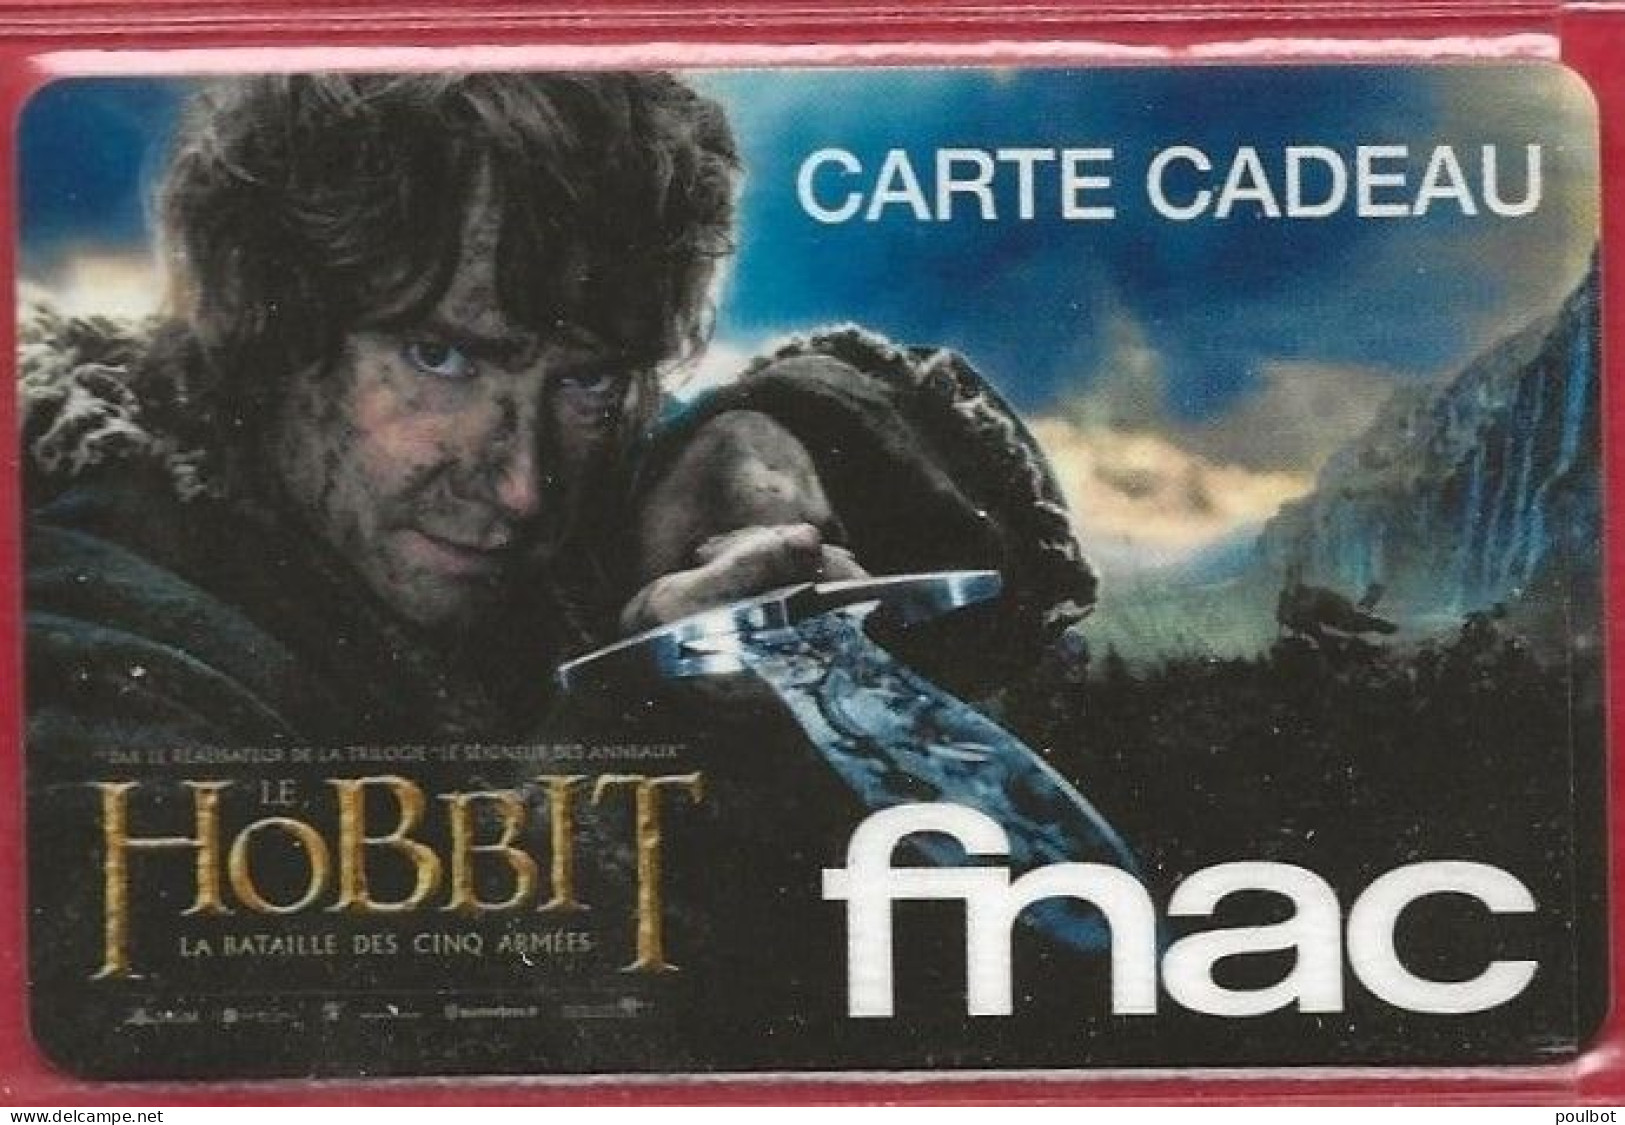 Carte Cadeau FNAC Le Hobbit - Cartes De Fidélité Et Cadeau